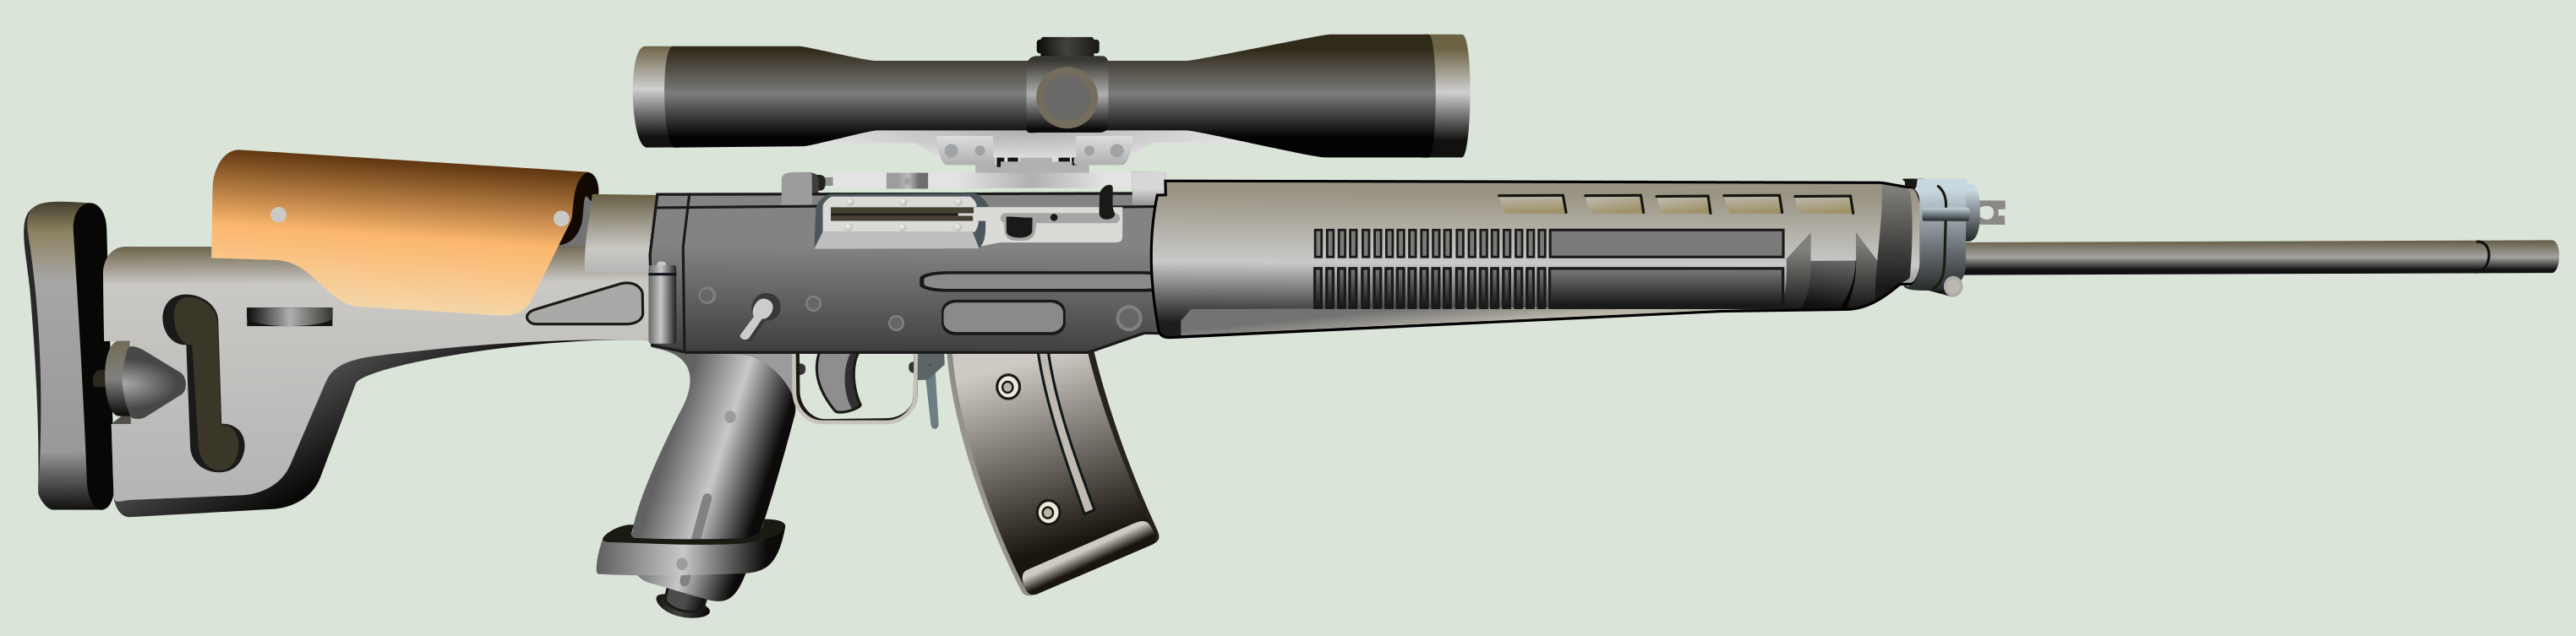 Sig Sg 550 Sniper By Scarletlightning565 On Deviantart